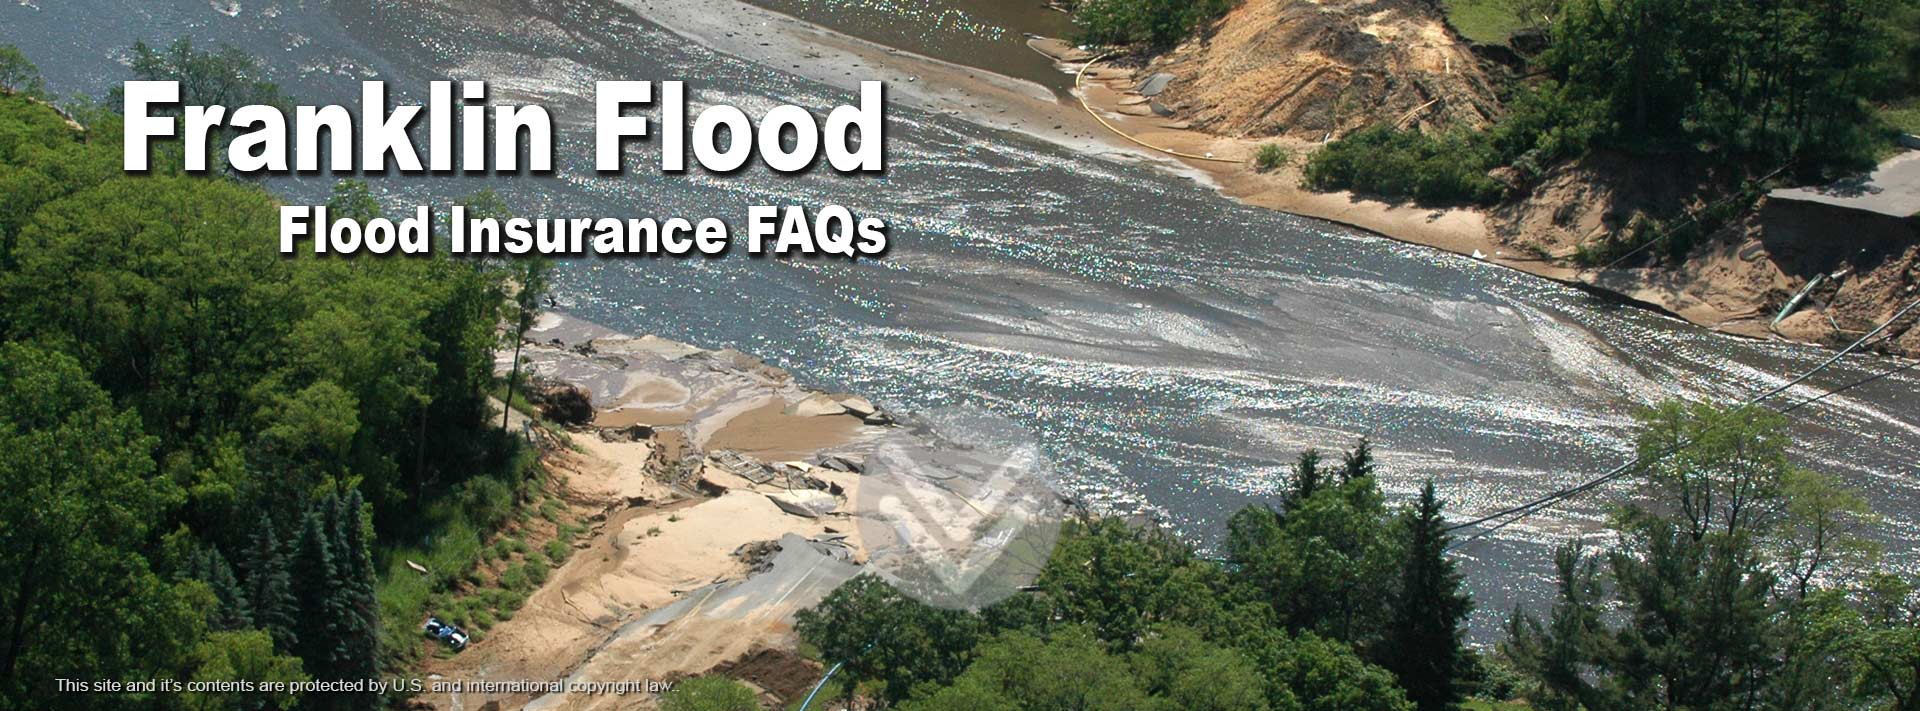 Flood Insurance Myths - Franklin Flood